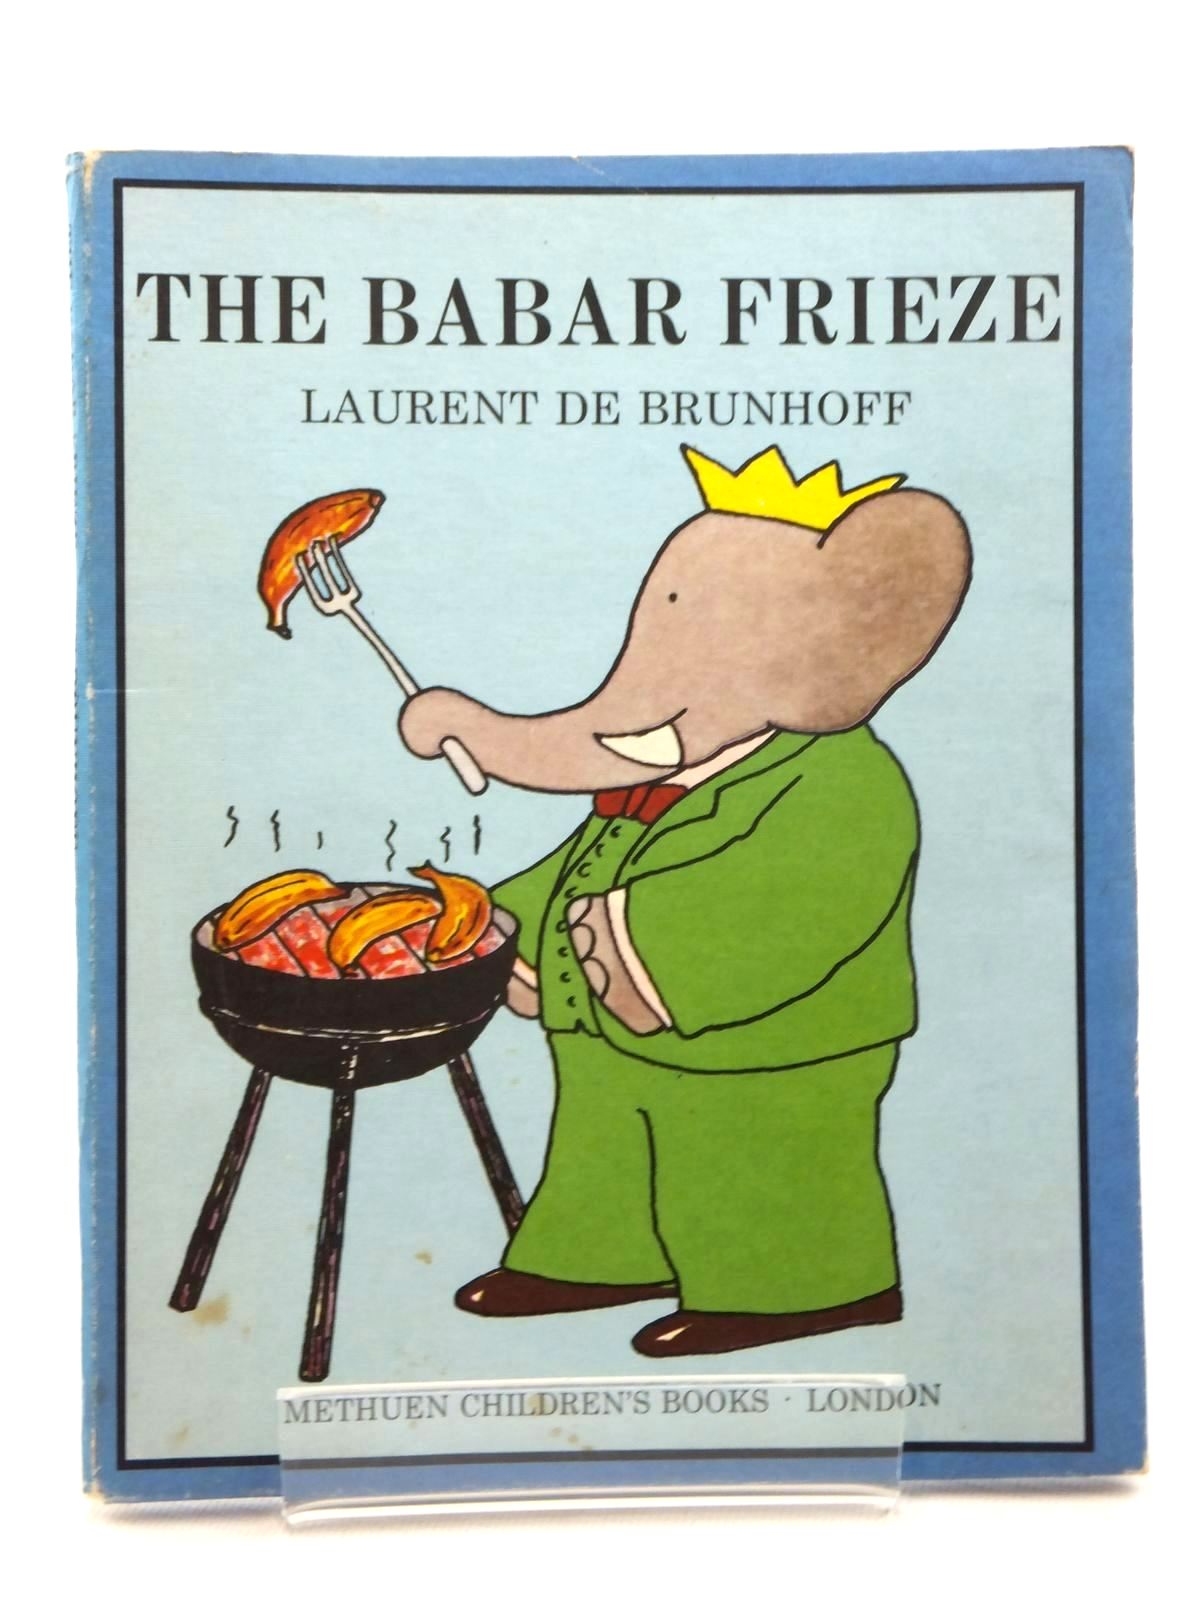 THE BABAR FRIEZE - De Brunhoff, Laurent & Jones, Olive